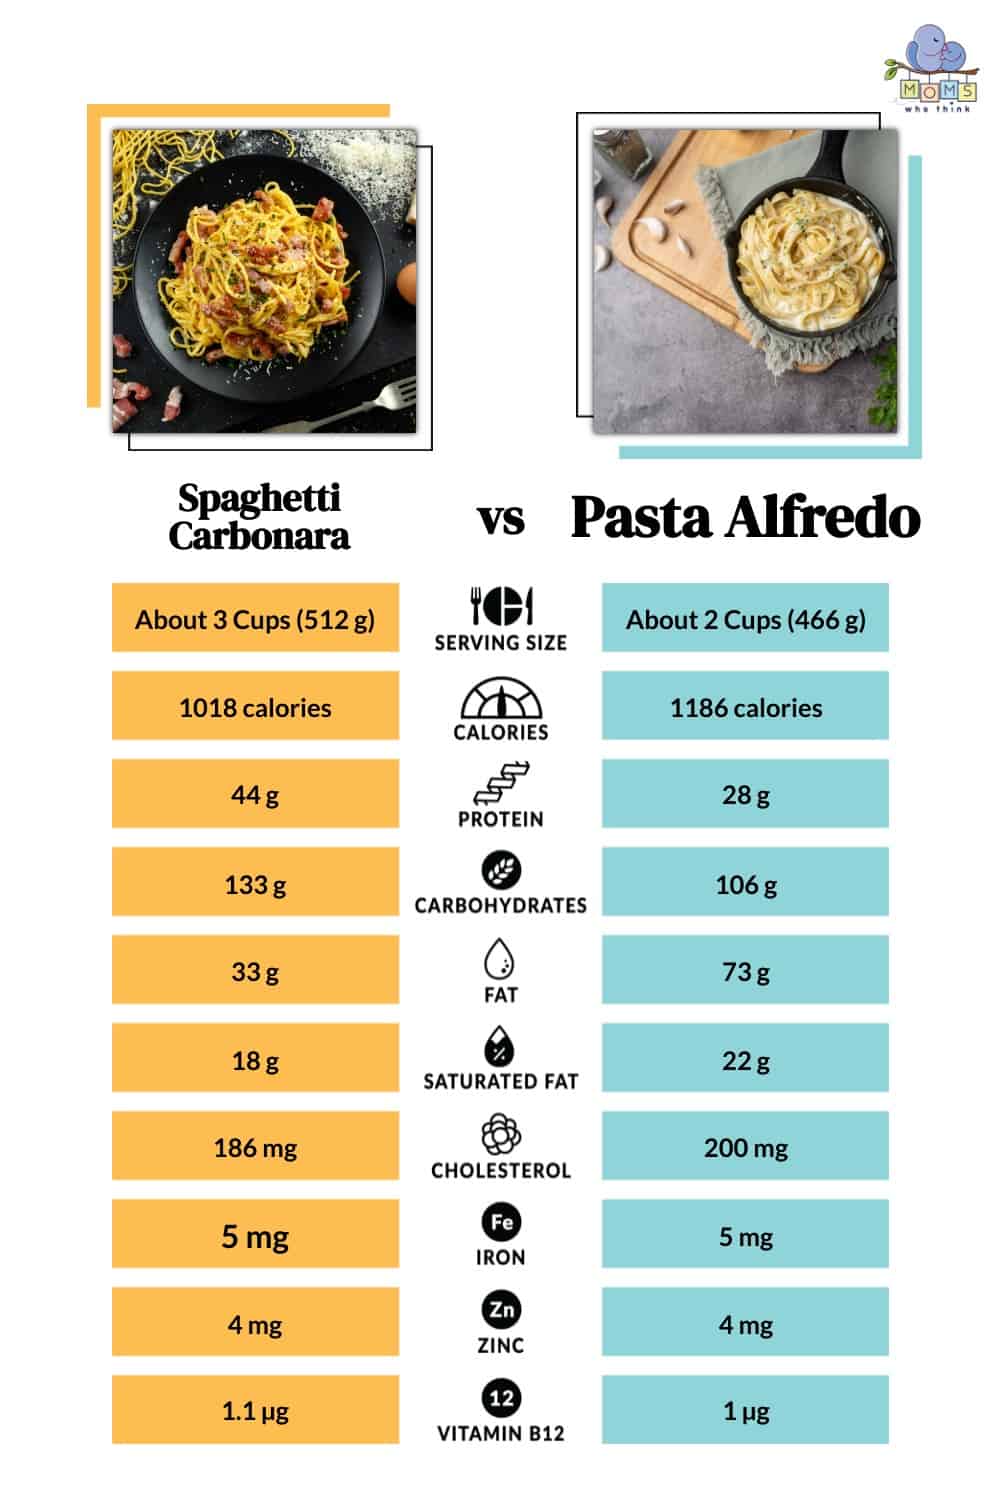 Spaghetti Carbonara vs Pasta Alfredo Differences